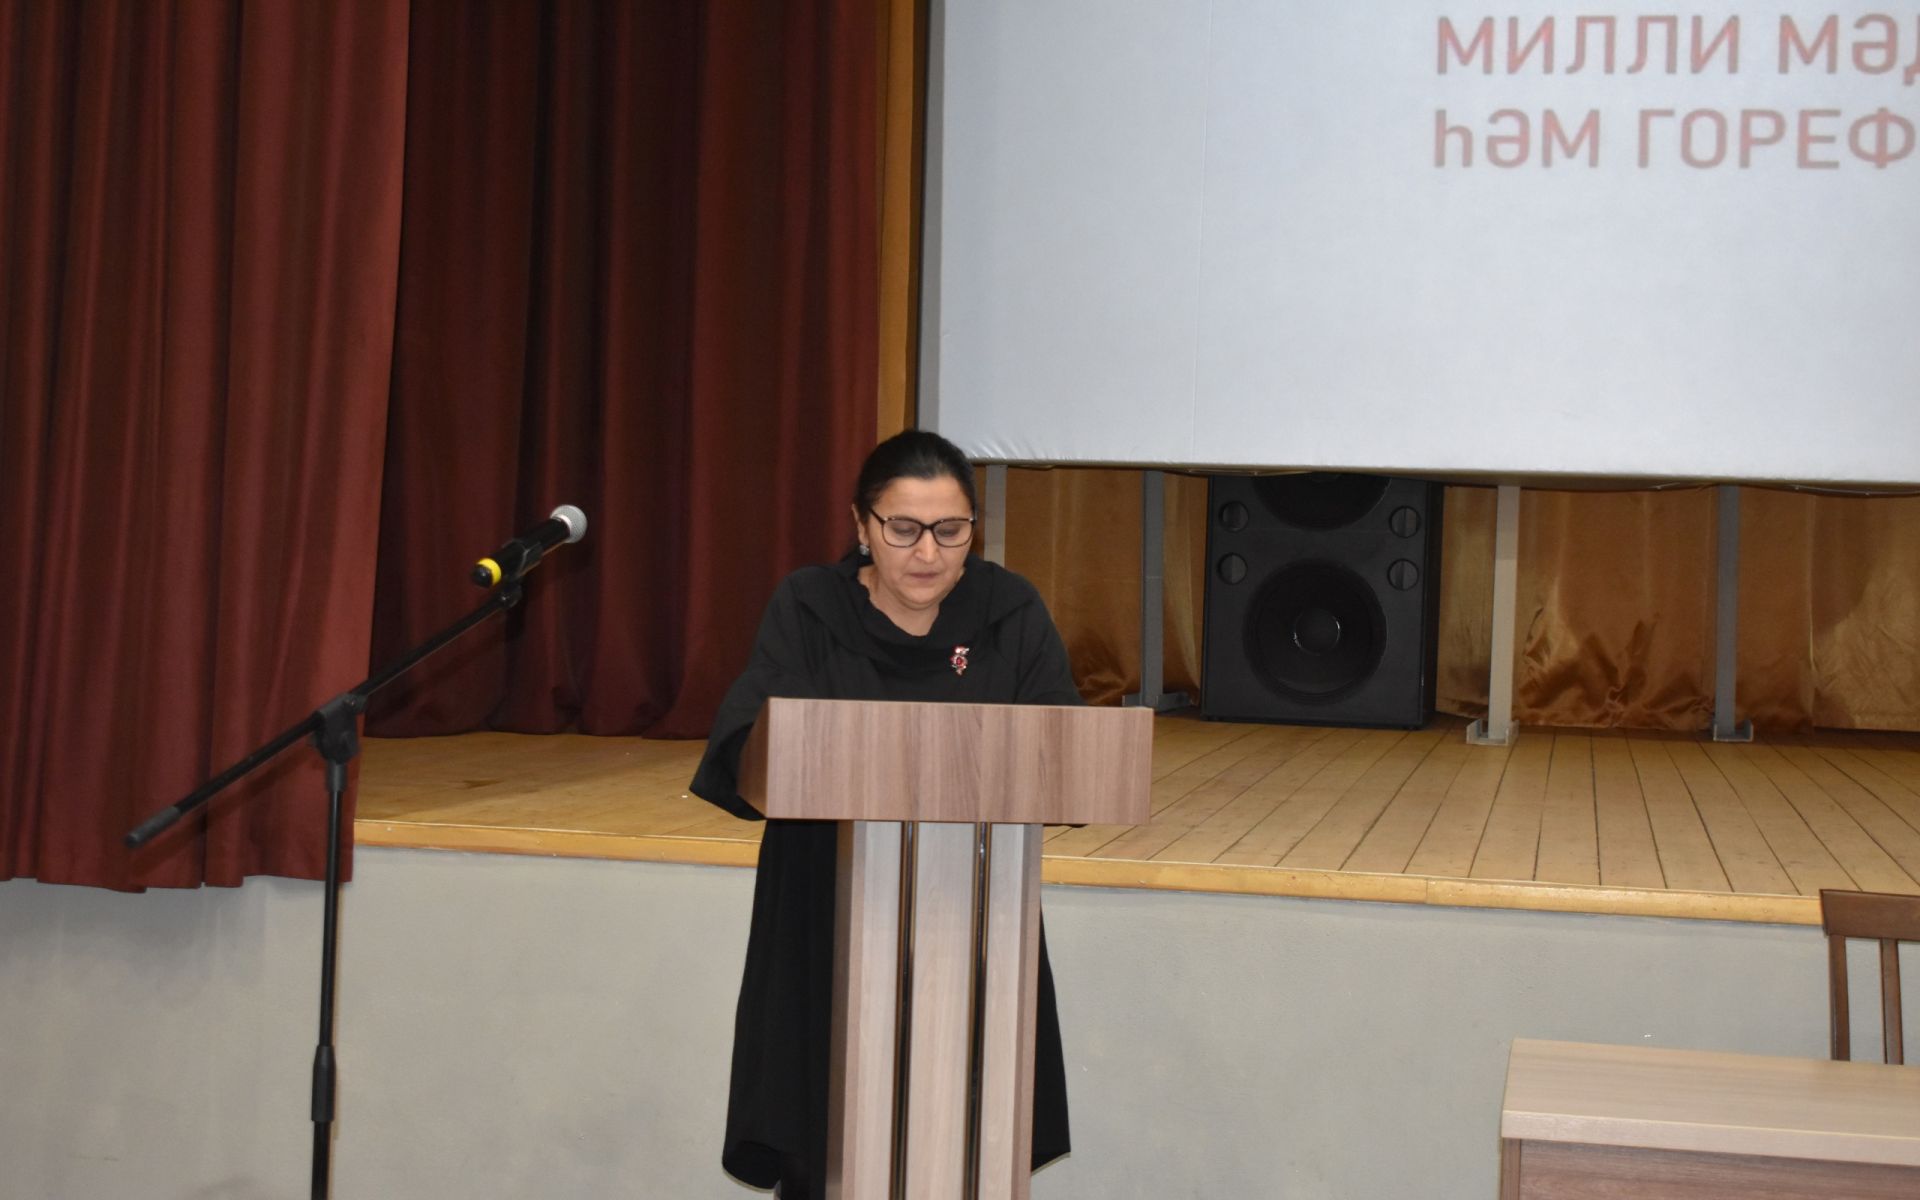 В Азнакаево состоялось отчетное собрание трудового коллектива Культурного центра